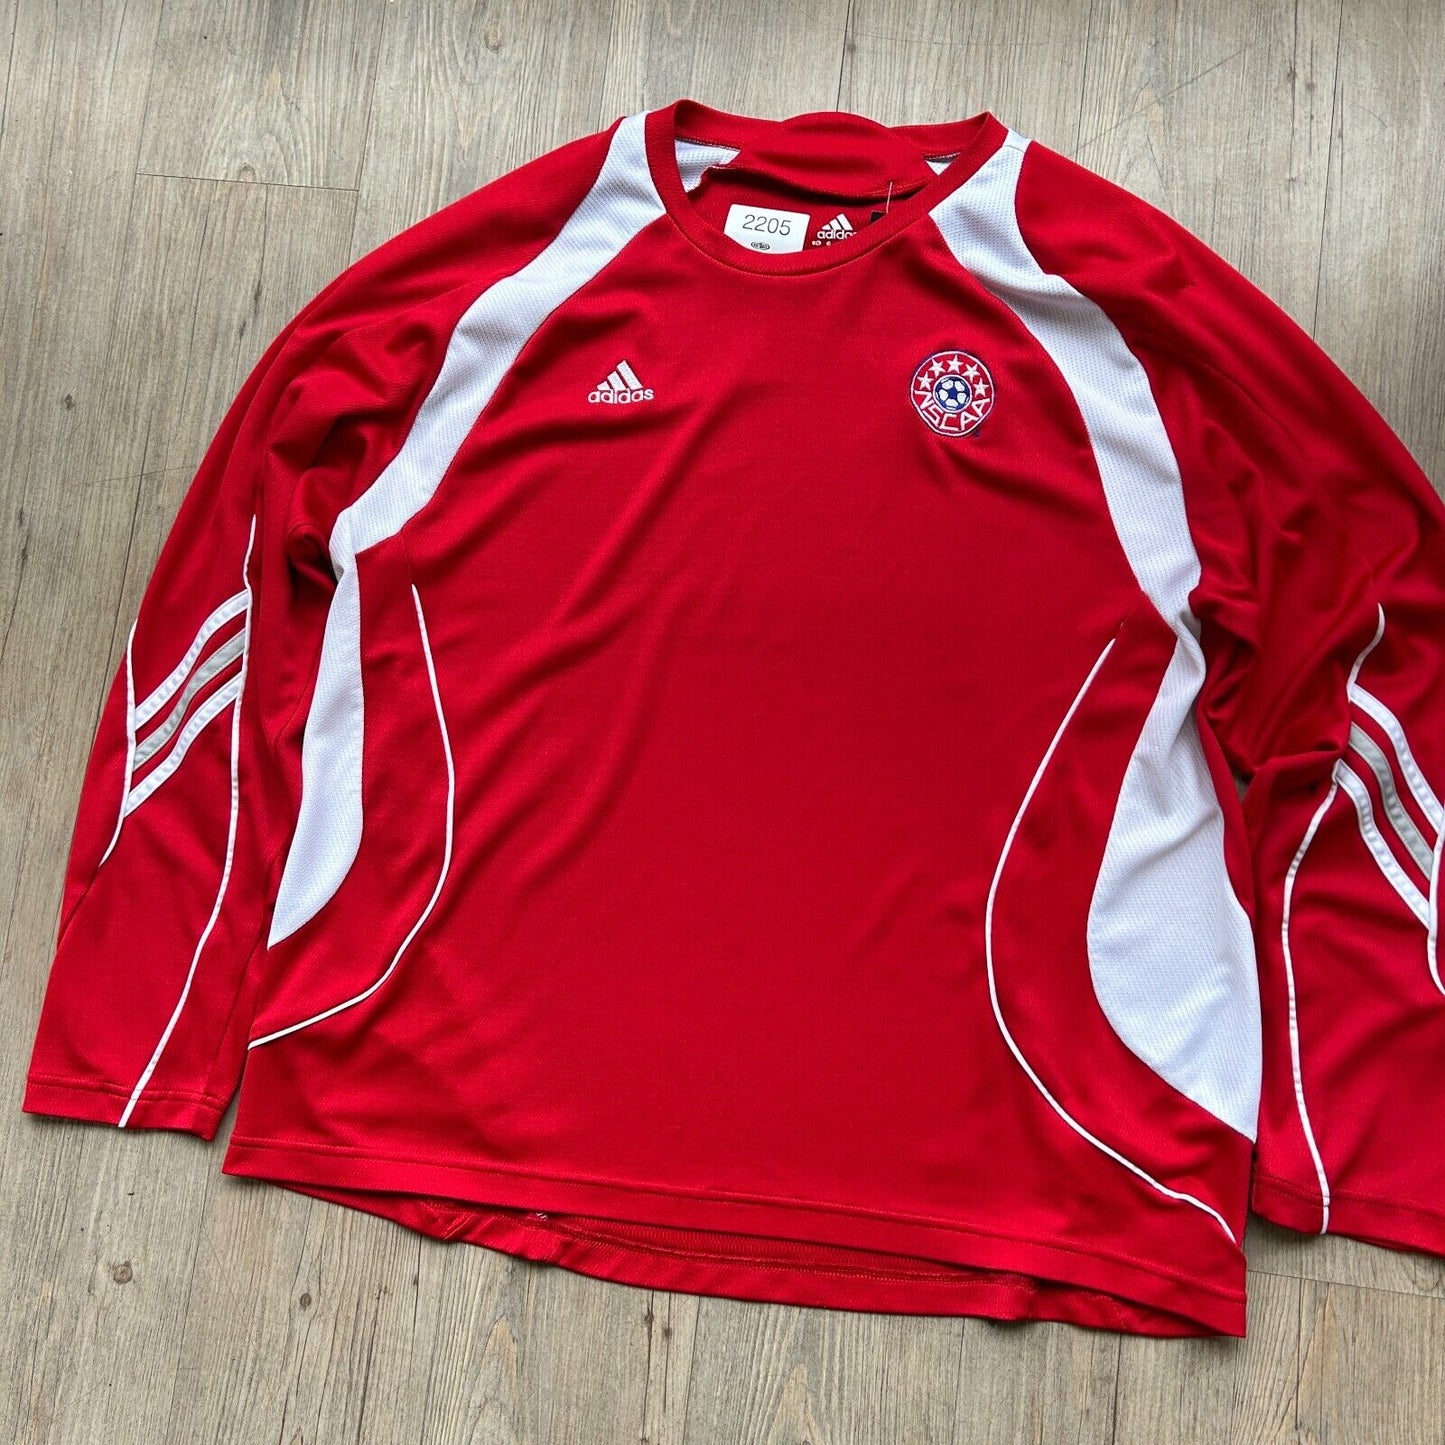 VINTAGE | ADIDAS Soccer Football Club Long Sleeve Jersey sz L/XL Adult